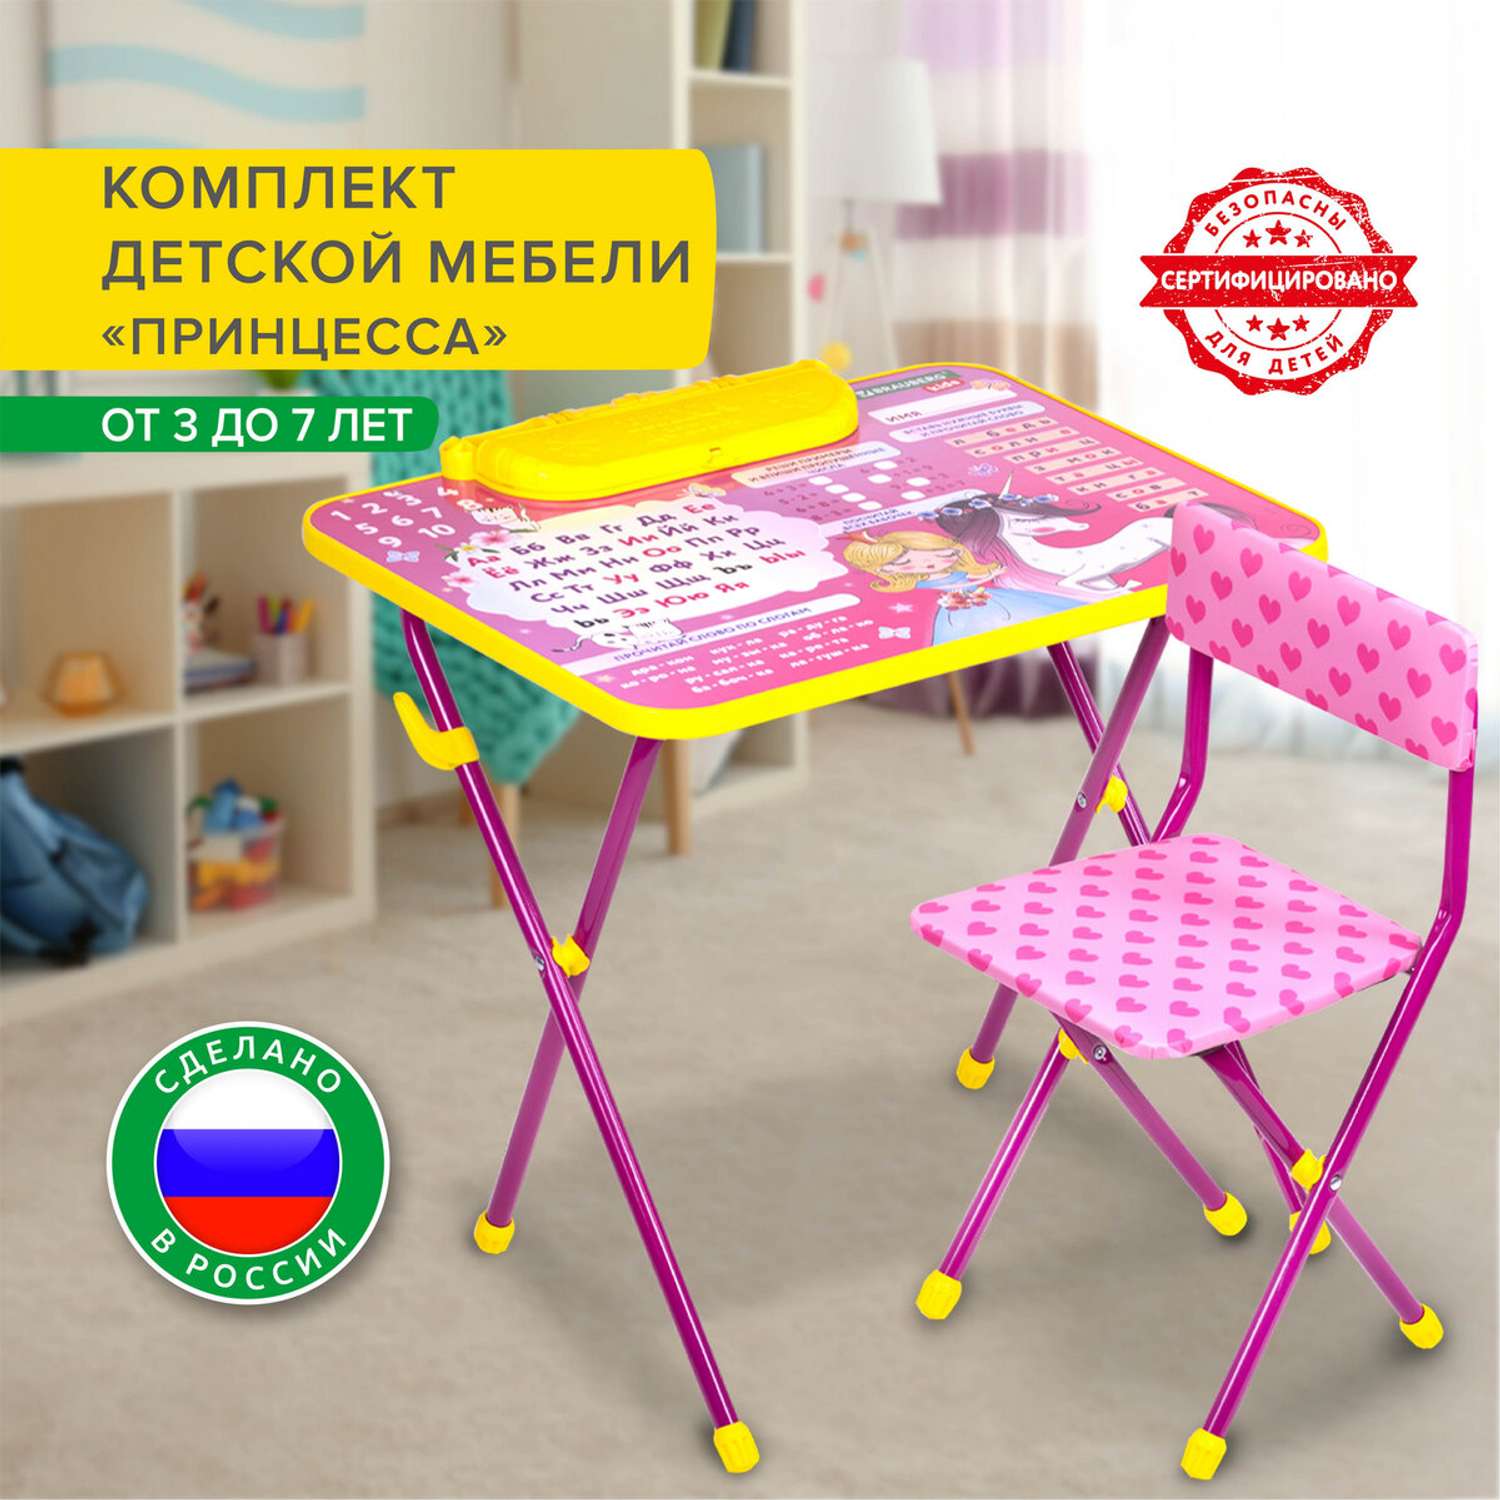 Столик и стульчик детский Brauberg игровой набор для развивающих игр для девочки розовый Принцесса - фото 1